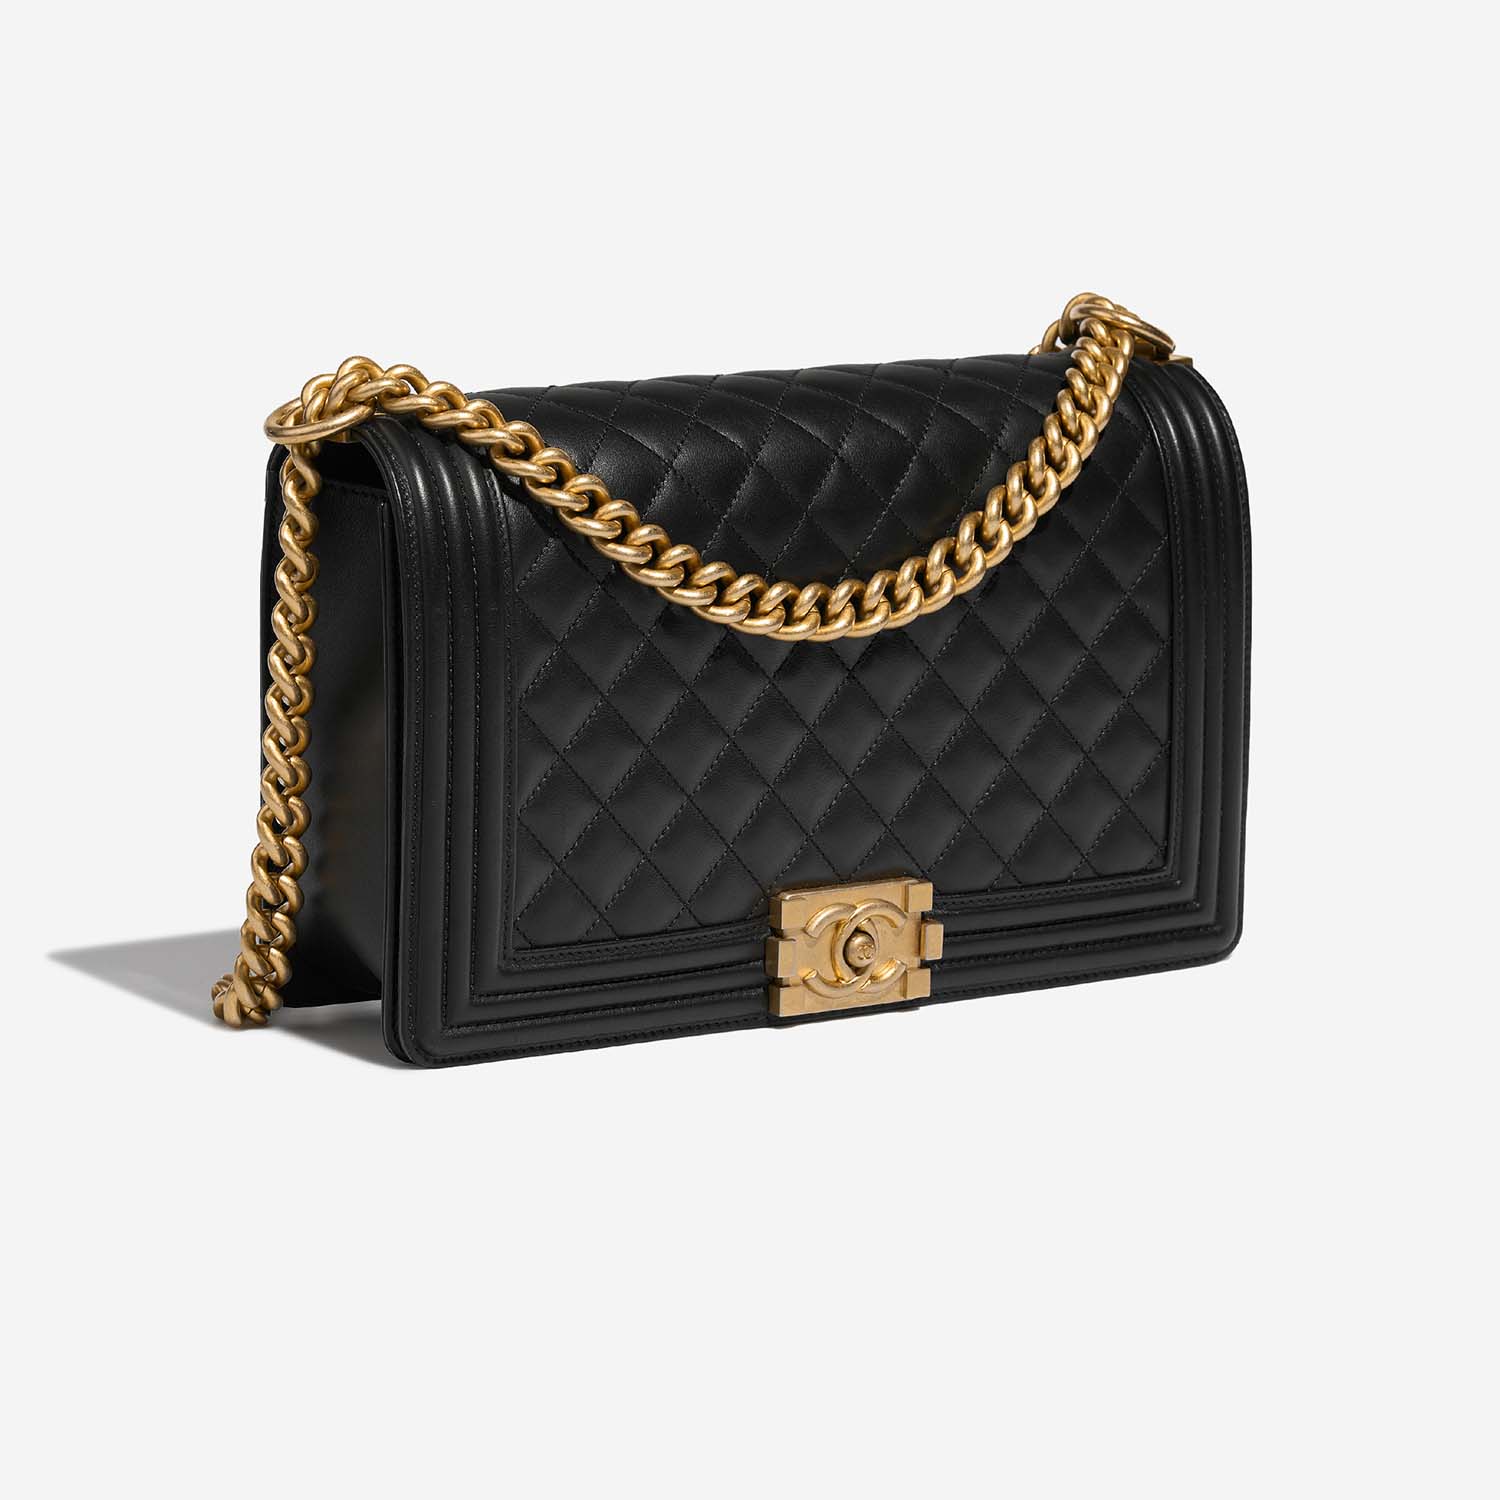 Chanel Boy NewMedium Black Side Front | Verkaufen Sie Ihre Designer-Tasche auf Saclab.com